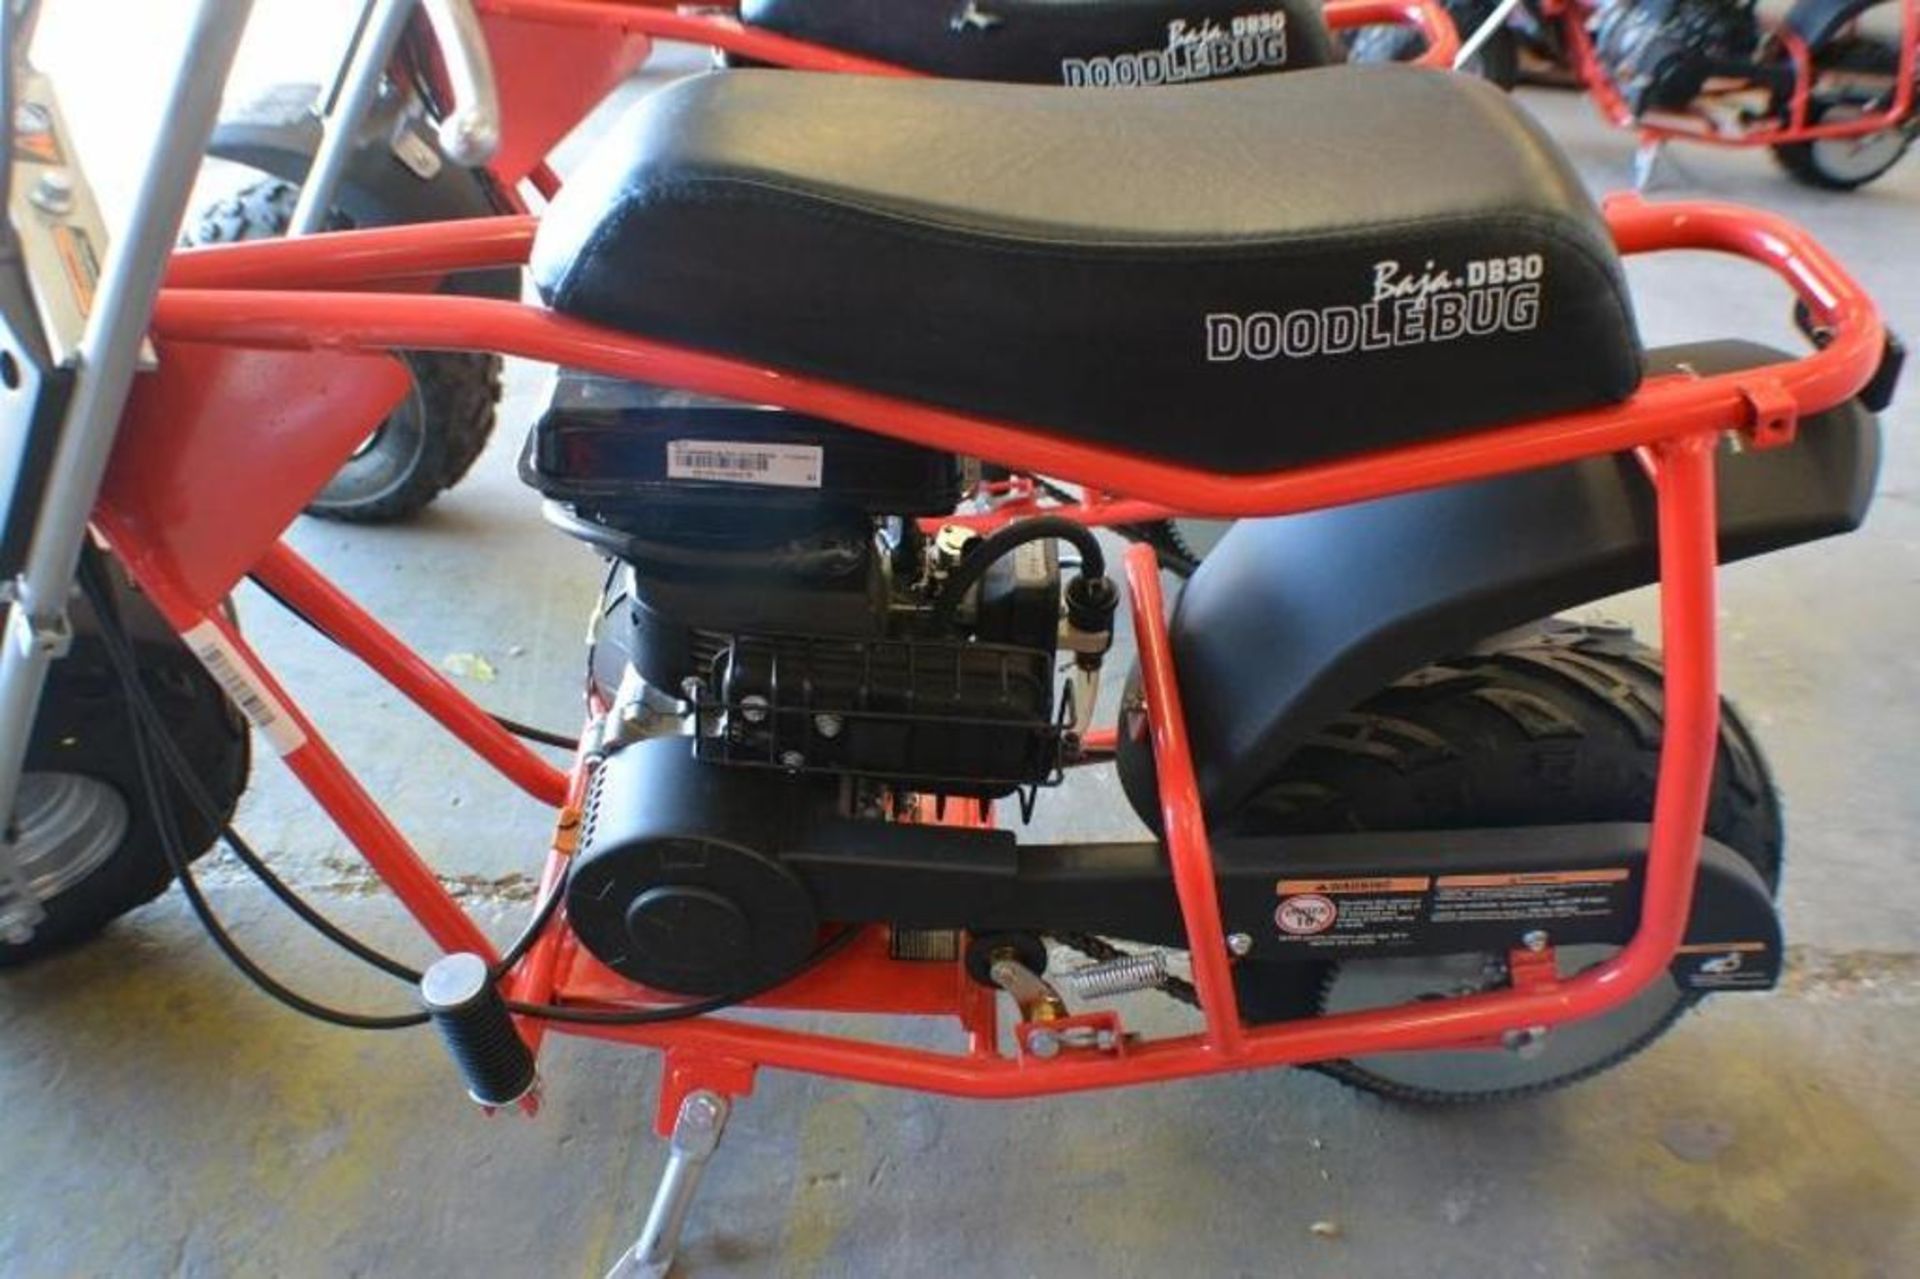 Mini Bike 97cc 4 Stroke Red/ Black Color - Image 4 of 6